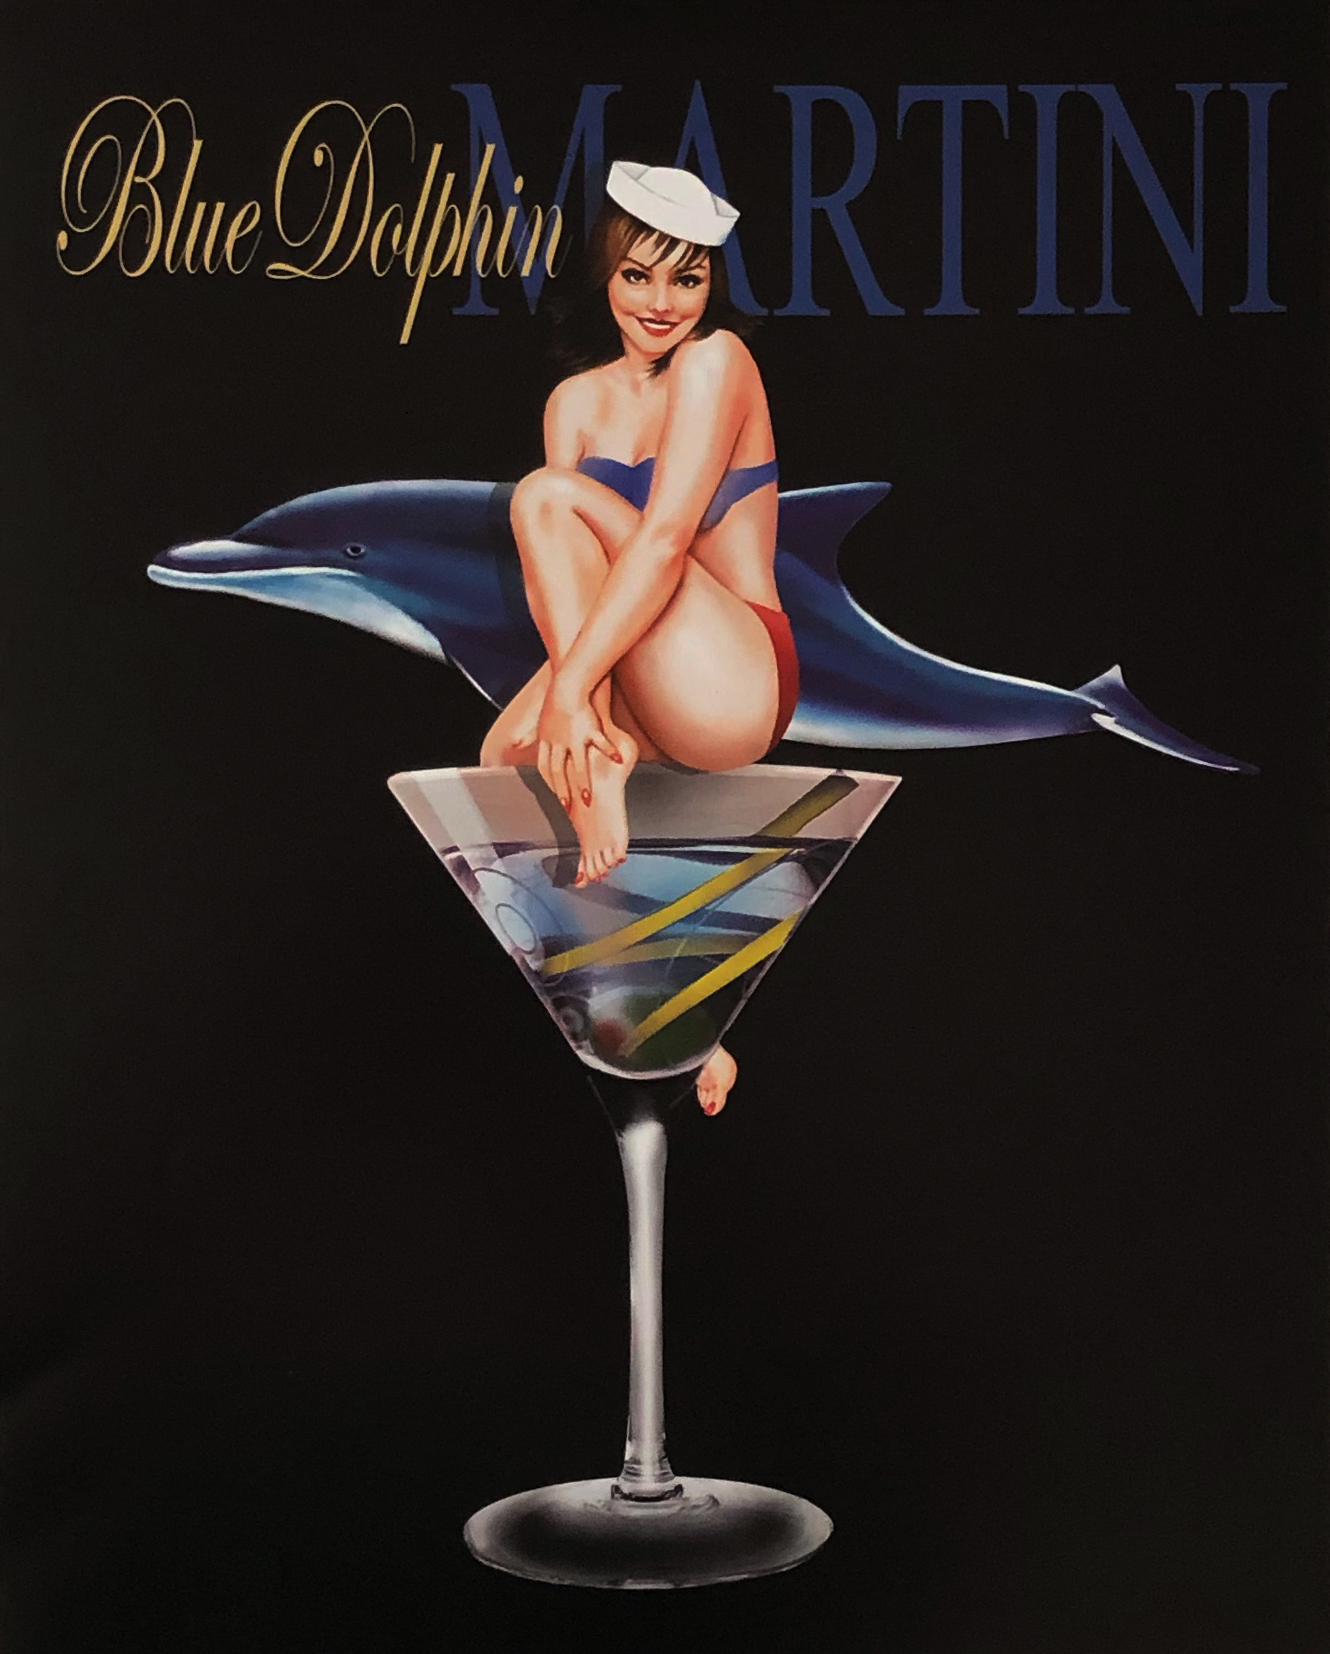 Blue Dolphin Martini